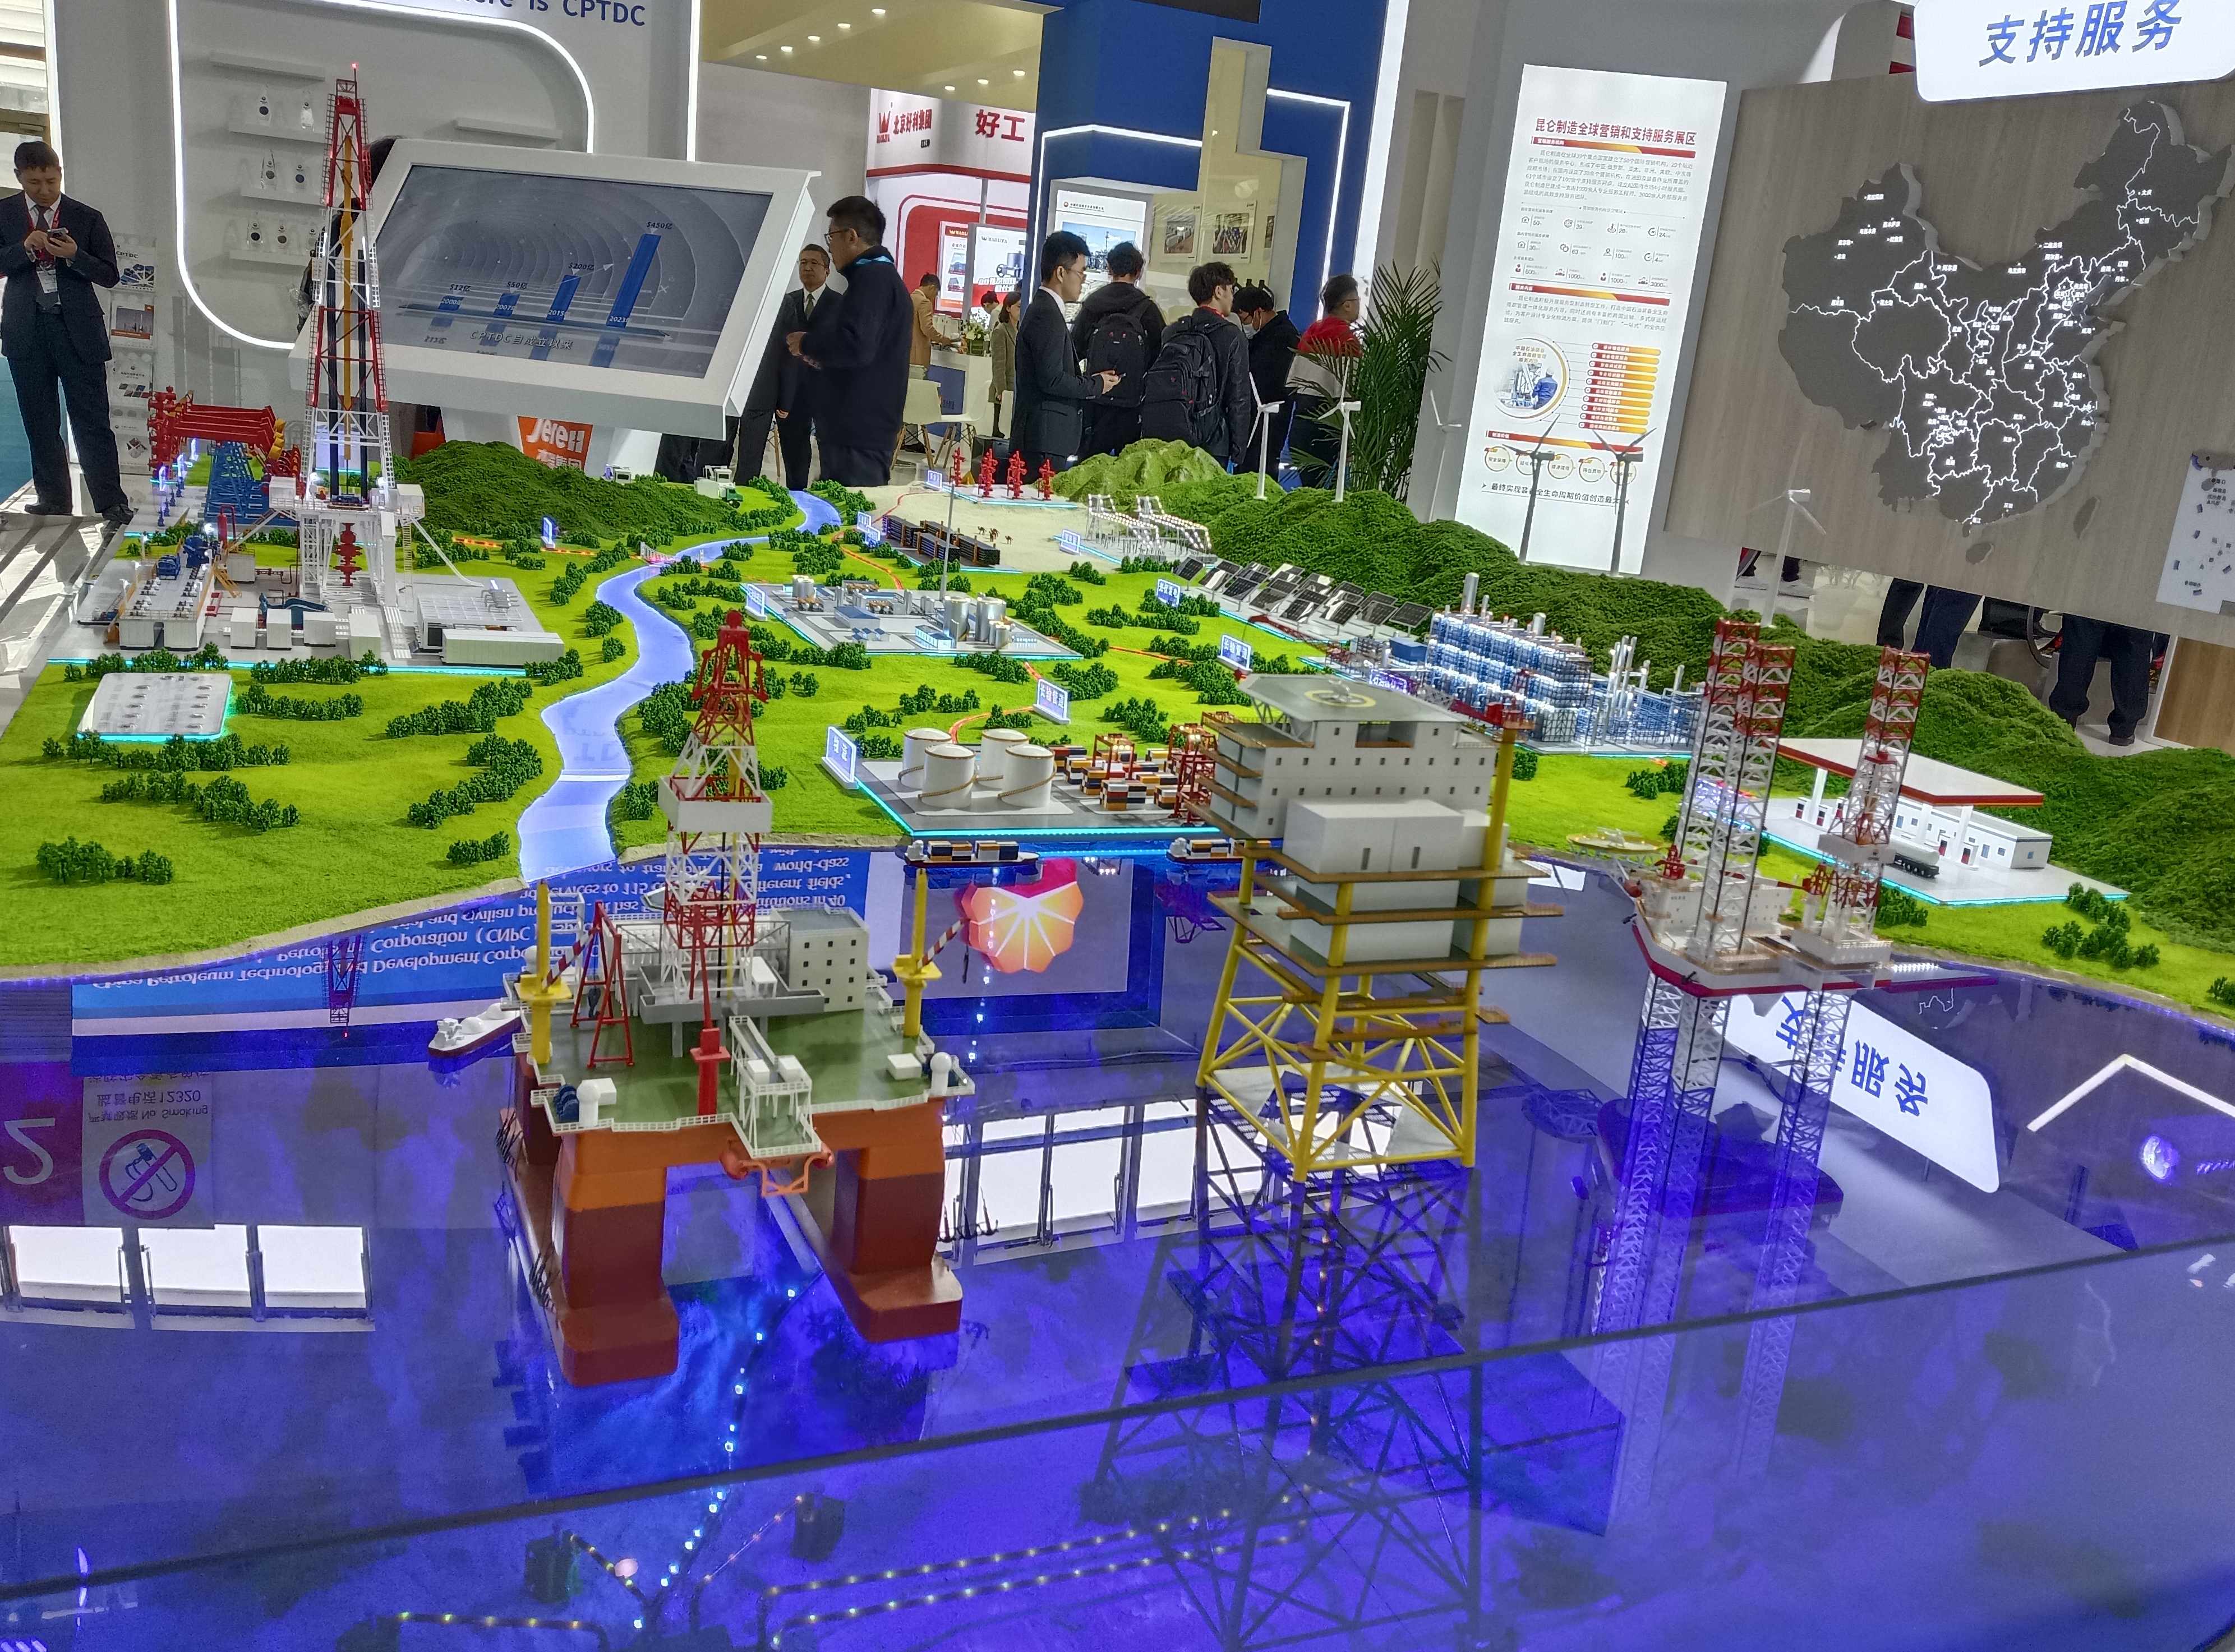 北京掘削井制御機器展示会で最新のイノベーションを体験してください